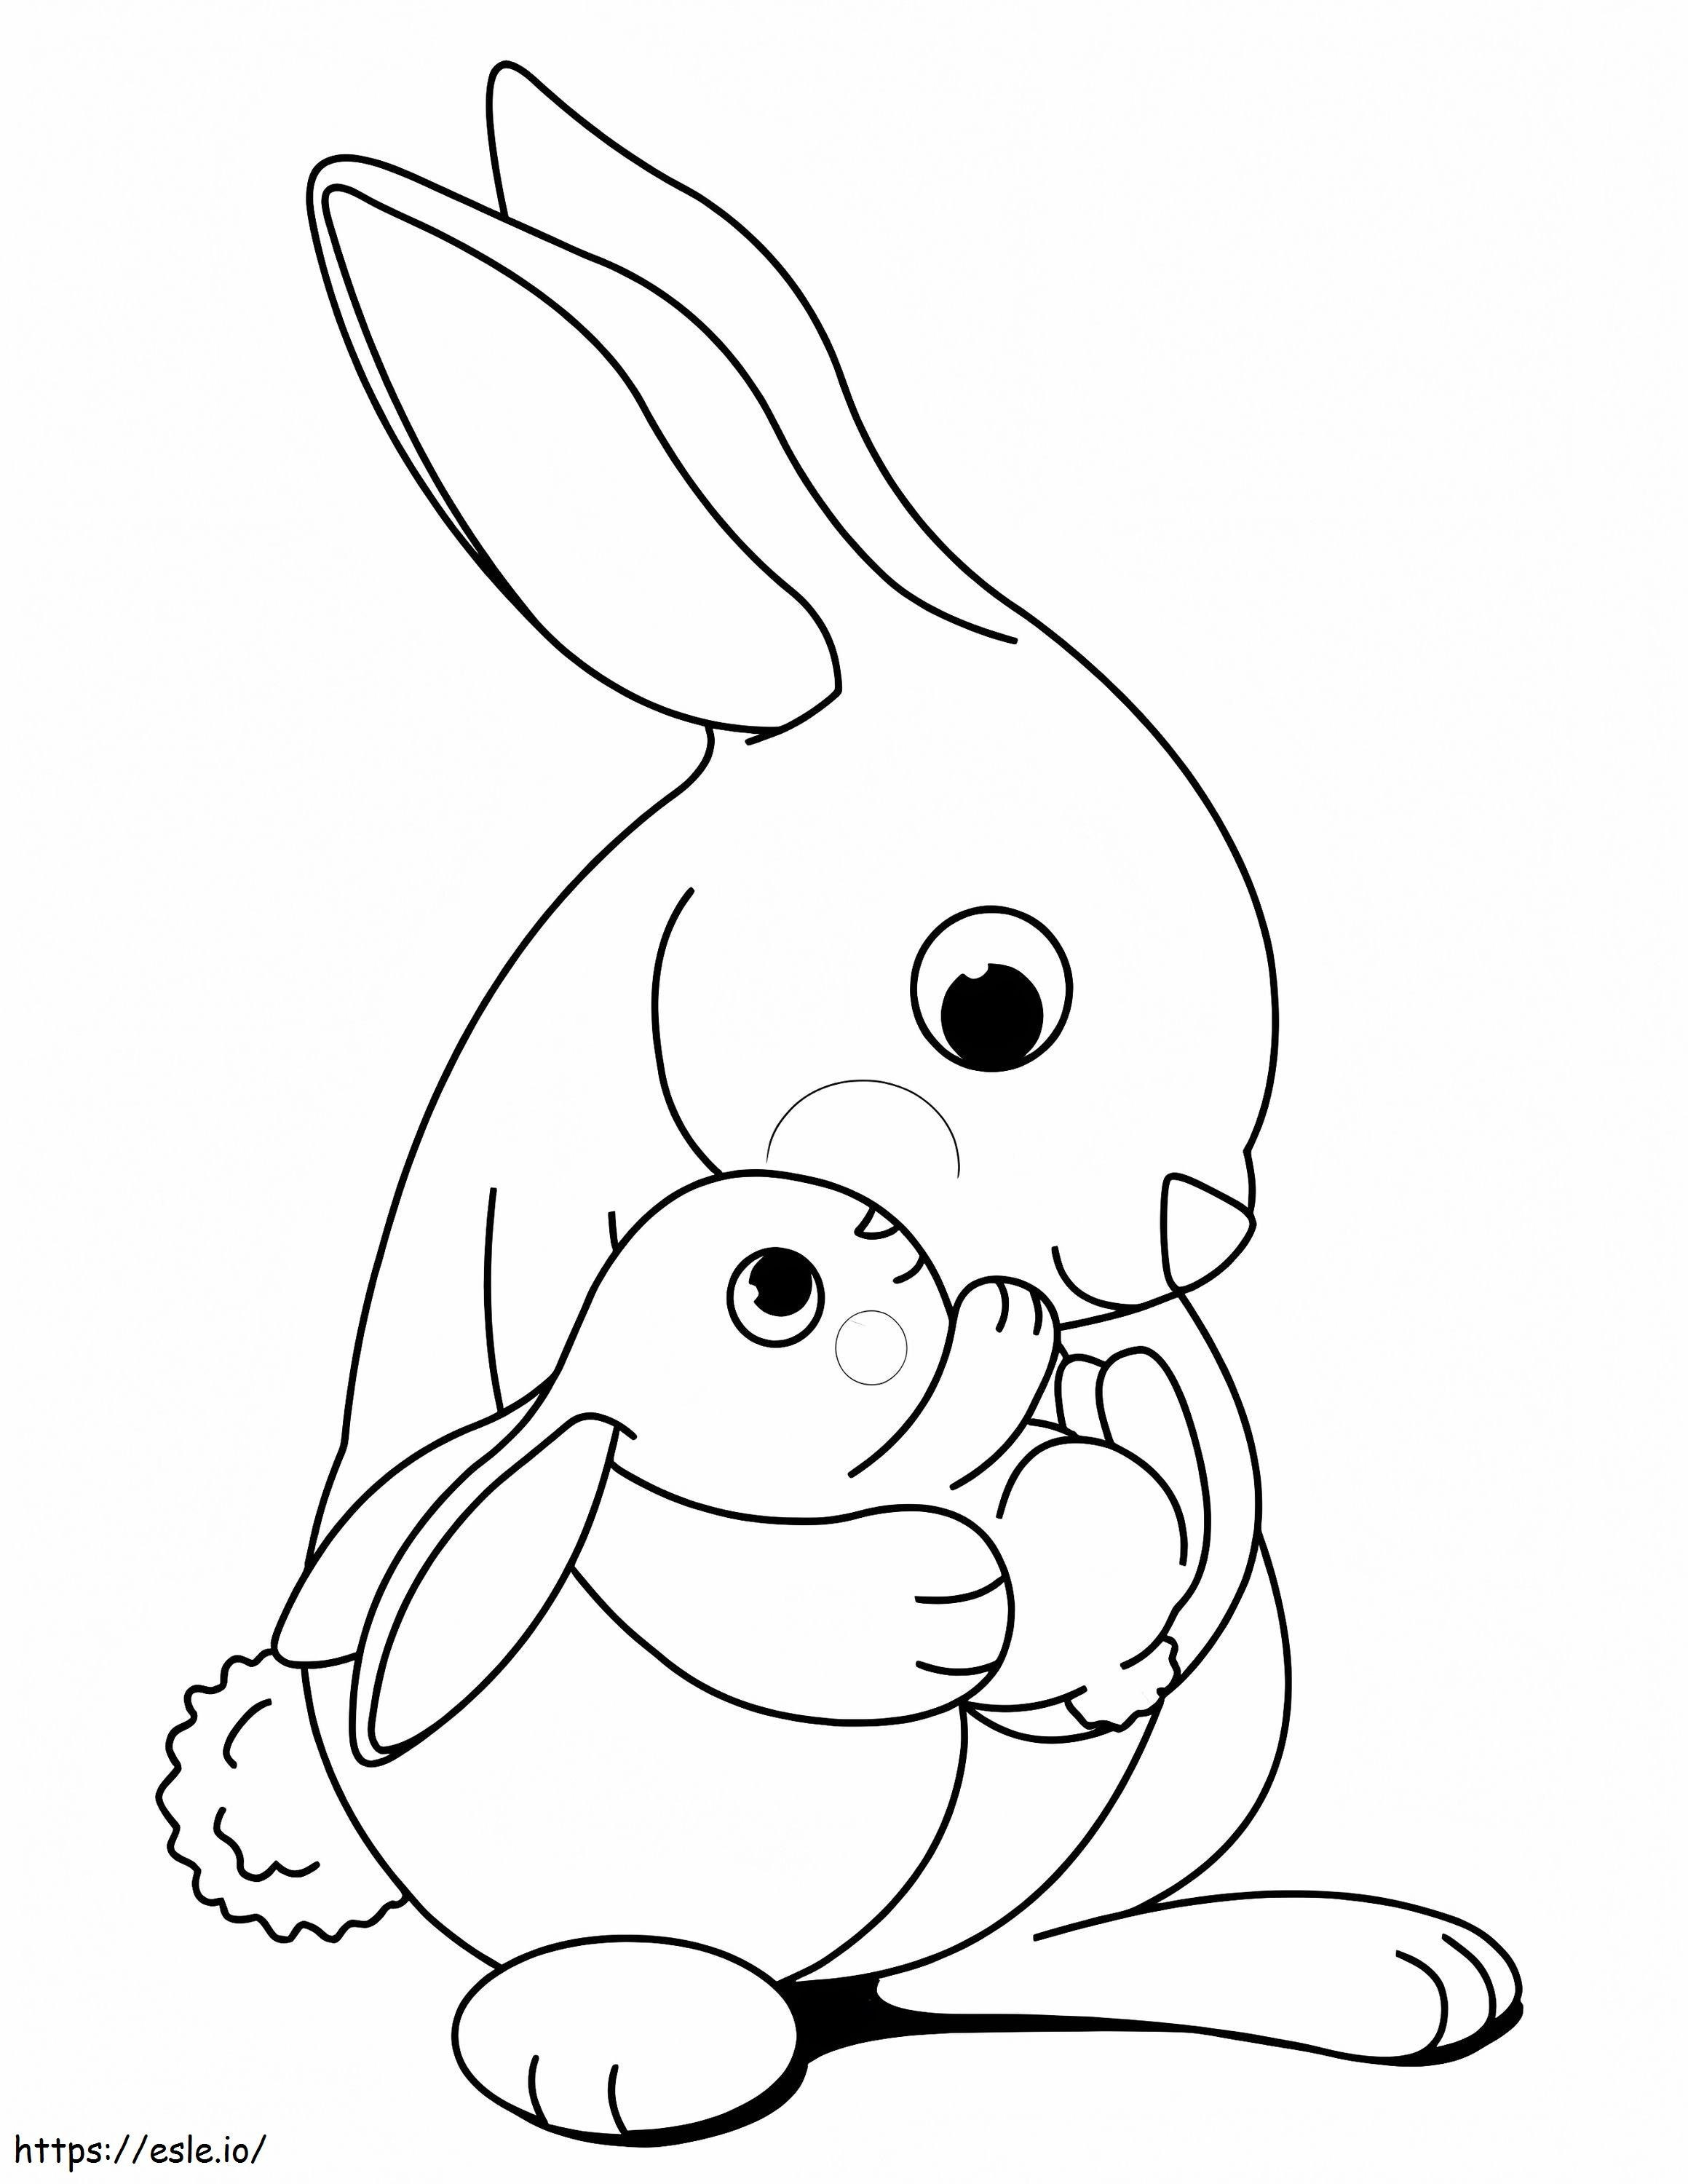 Mutter und Baby-Kaninchen ausmalbilder